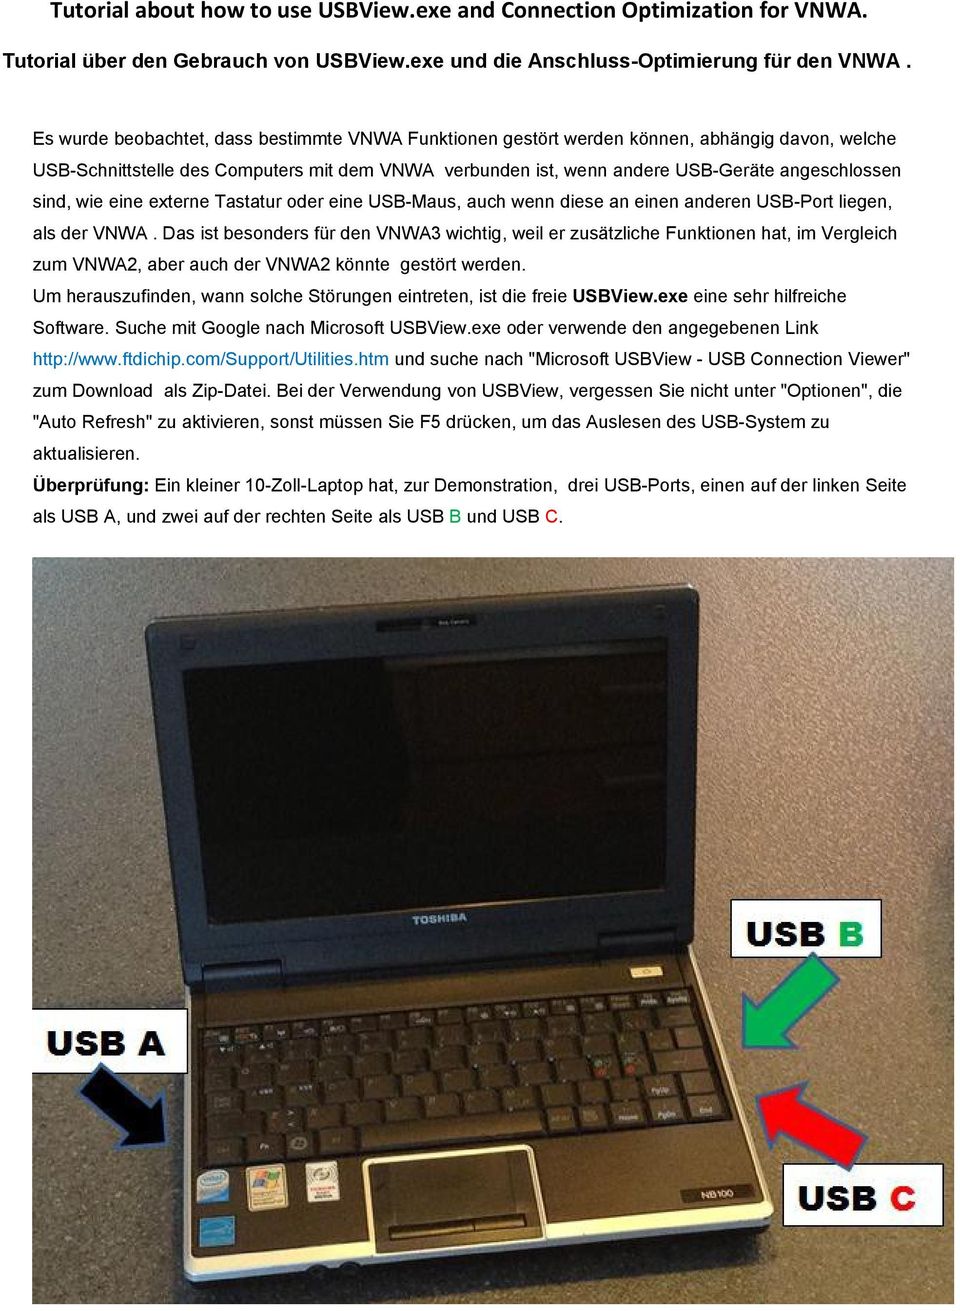 sind, wie eine externe Tastatur oder eine USB-Maus, auch wenn diese an einen anderen USB-Port liegen, als der VNWA.